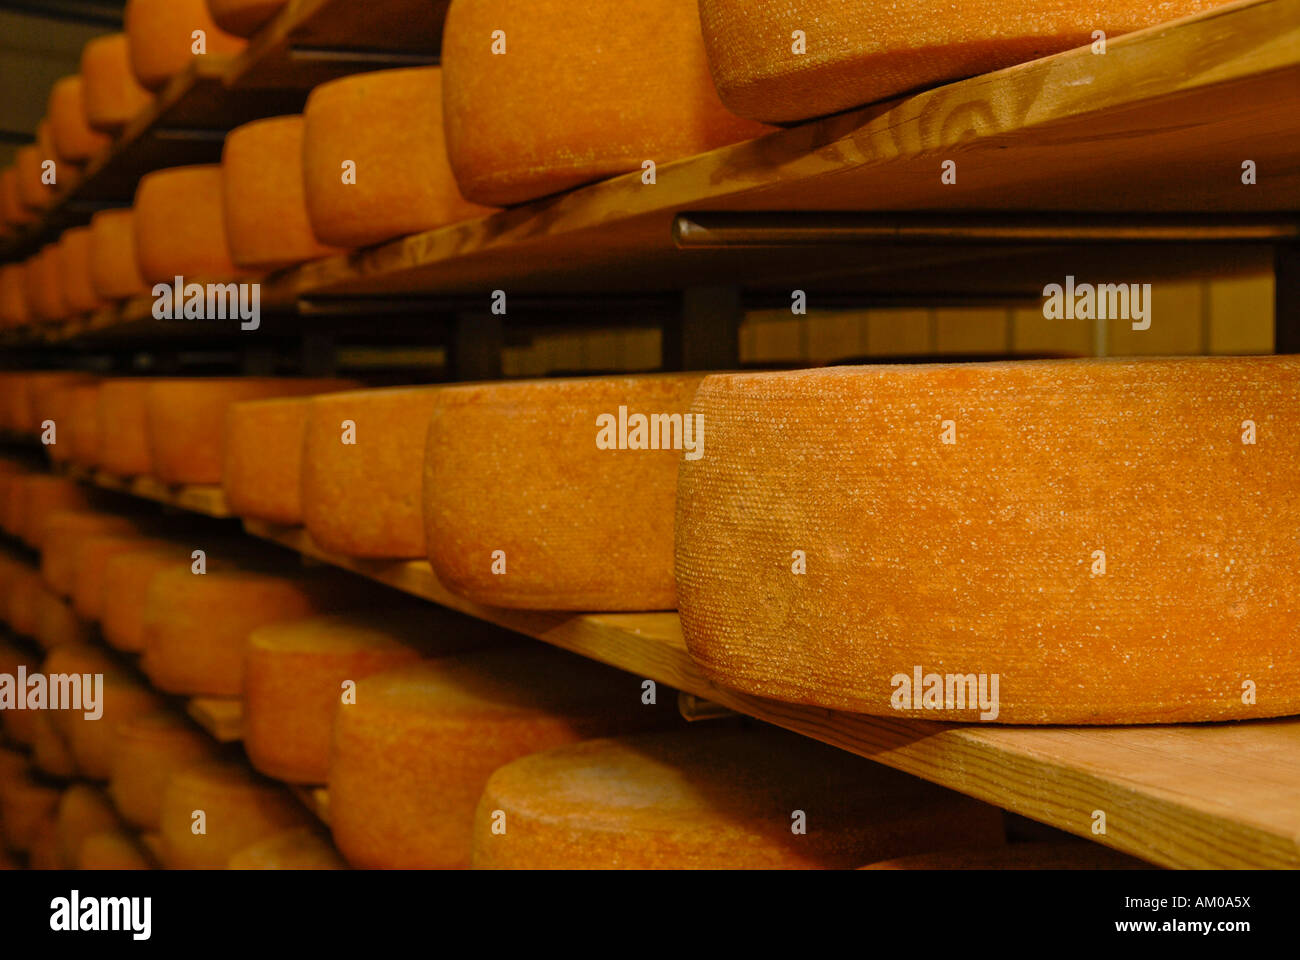 Memorizzazione di formaggi biologici in scaffalature in legno Foto Stock